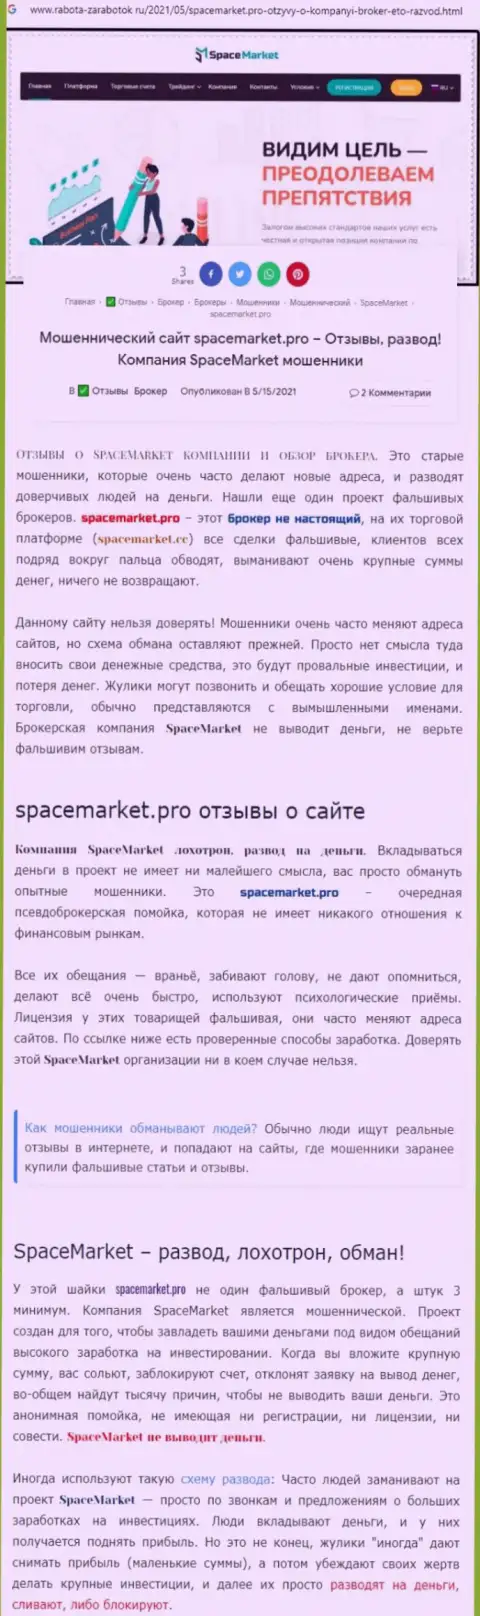 Кидалы Space Market нагло сливают - БУДЬТЕ ОЧЕНЬ БДИТЕЛЬНЫ (обзор)